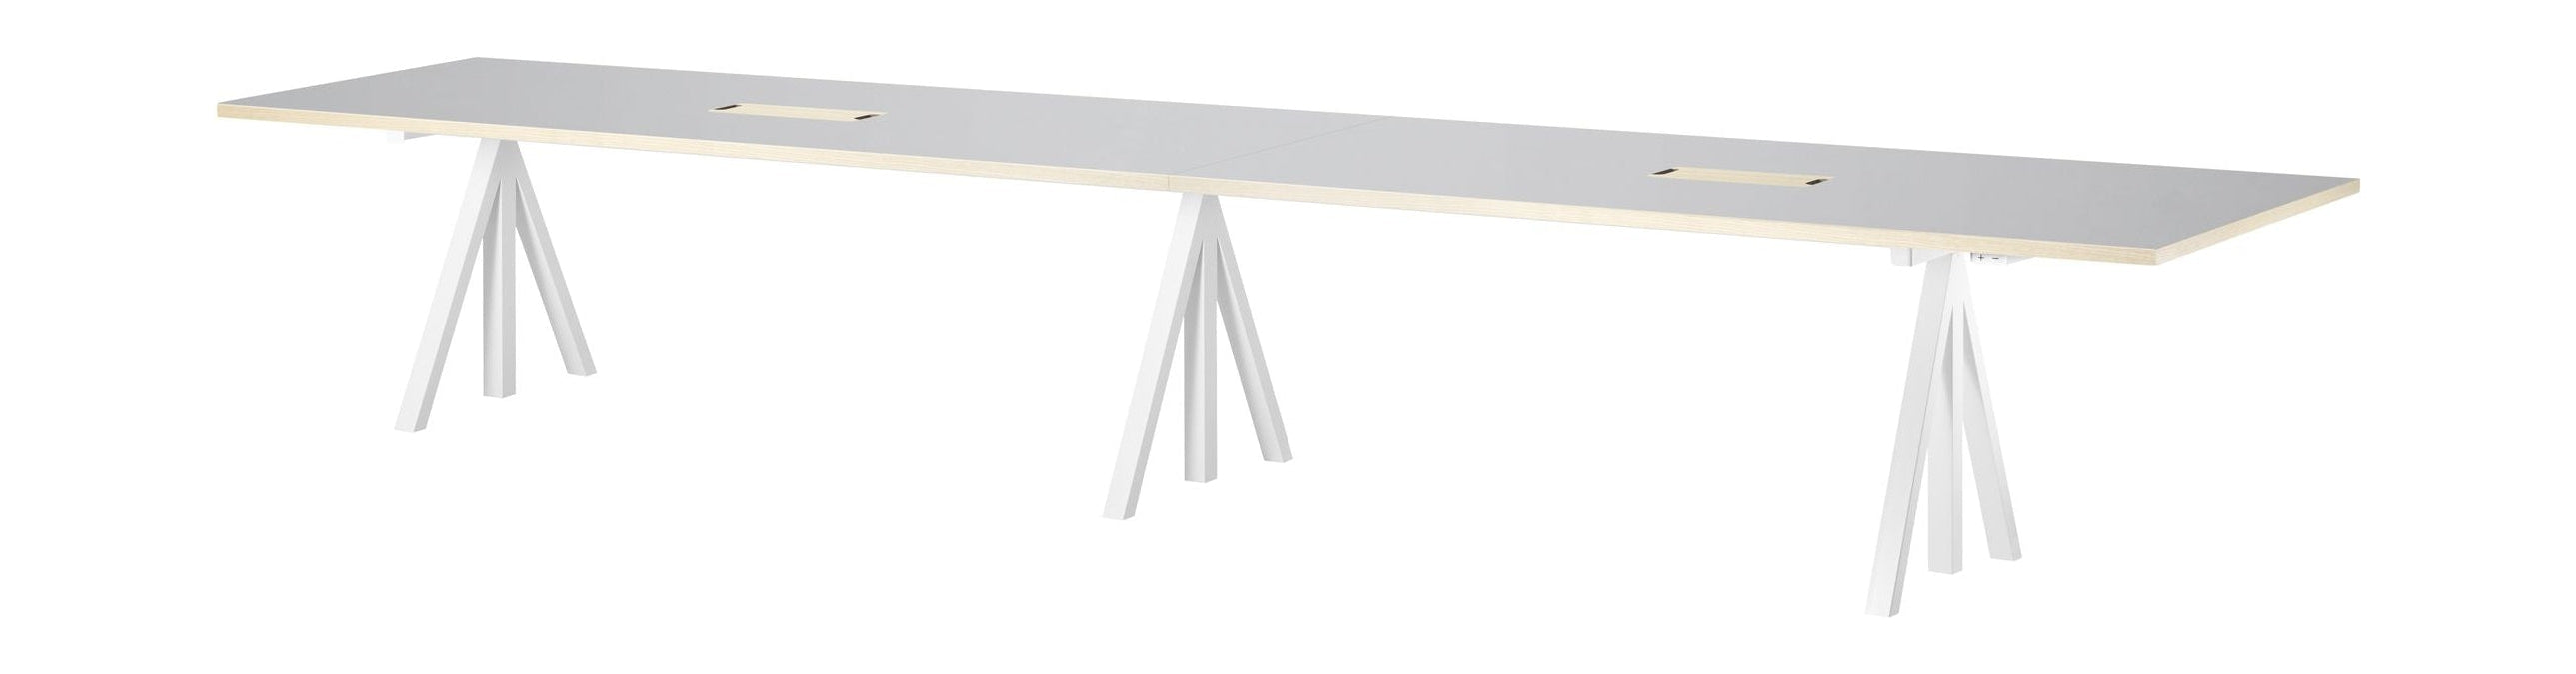 Tabella Conferenza regolabile dell'altezza mobile a corda 90x180 cm, linoleum grigio chiaro